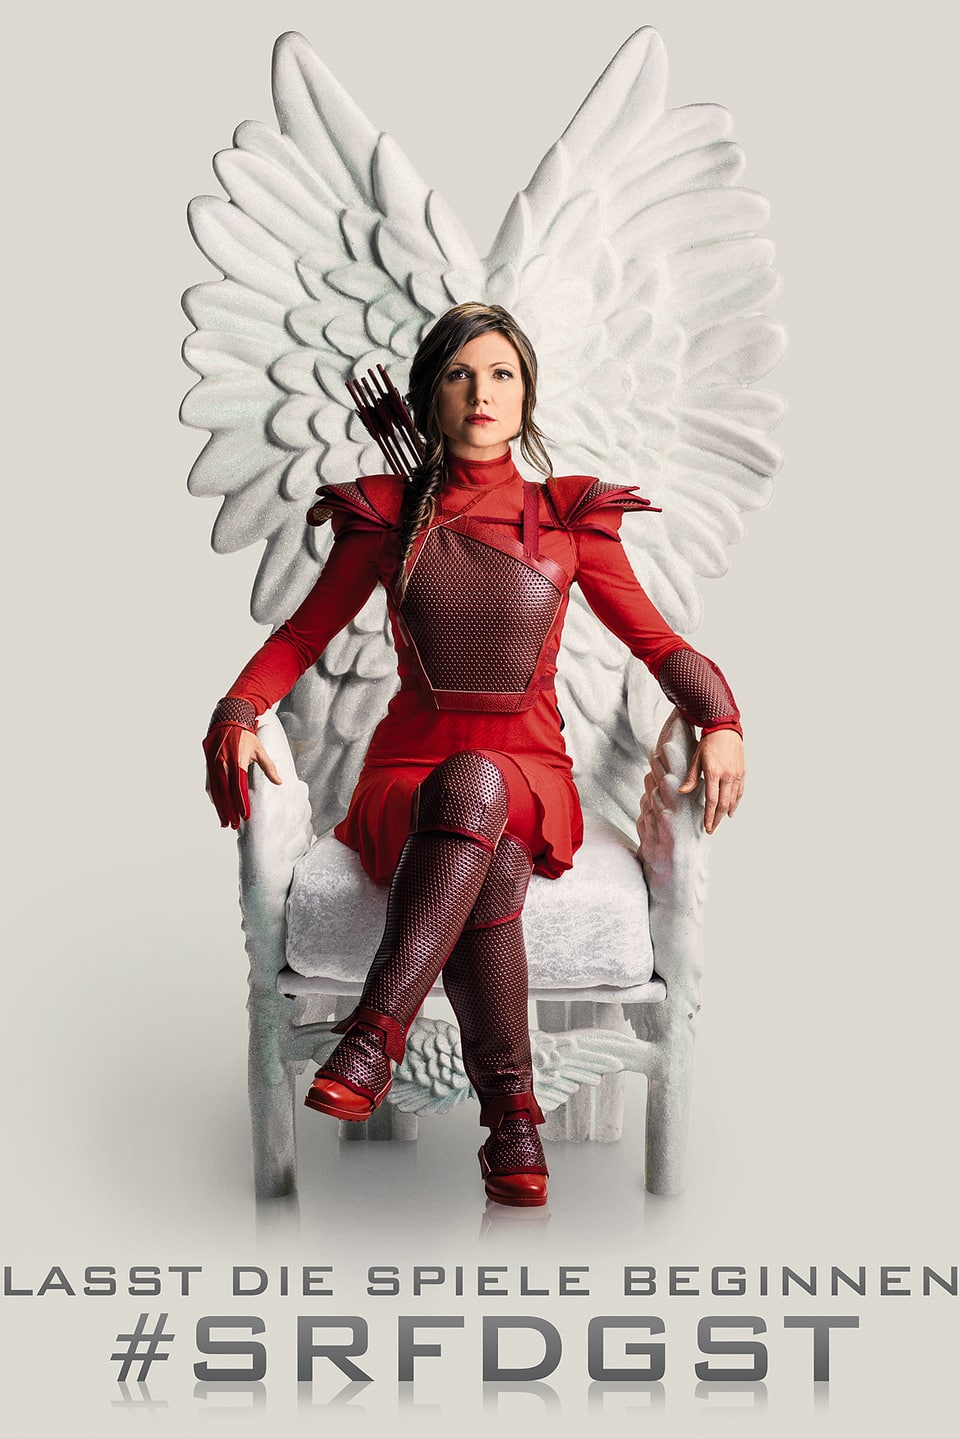 Viola Tami sitzt als Katniss Everdeen auf dem Thron.